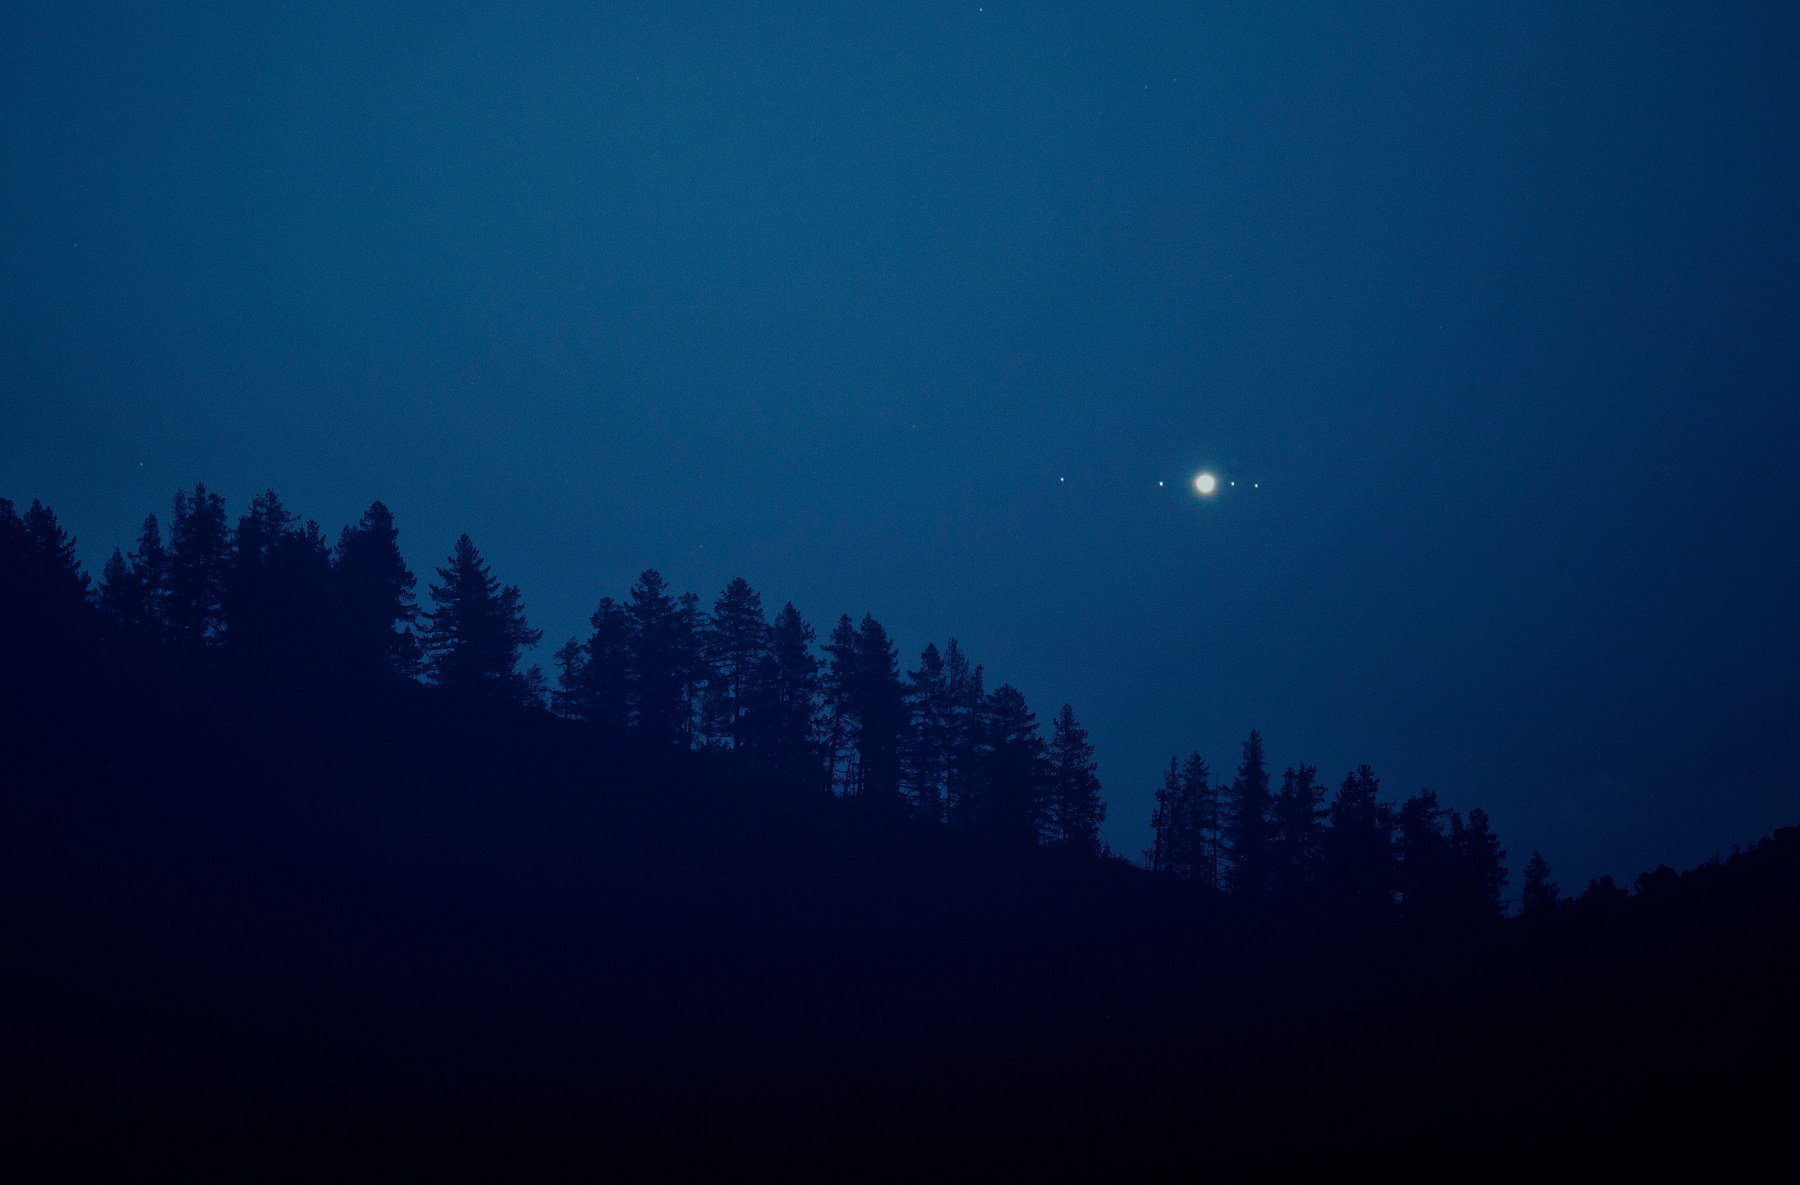 Восход Юпитера над горным лесом астрофото ночное фото юпитер астрономия лес горы